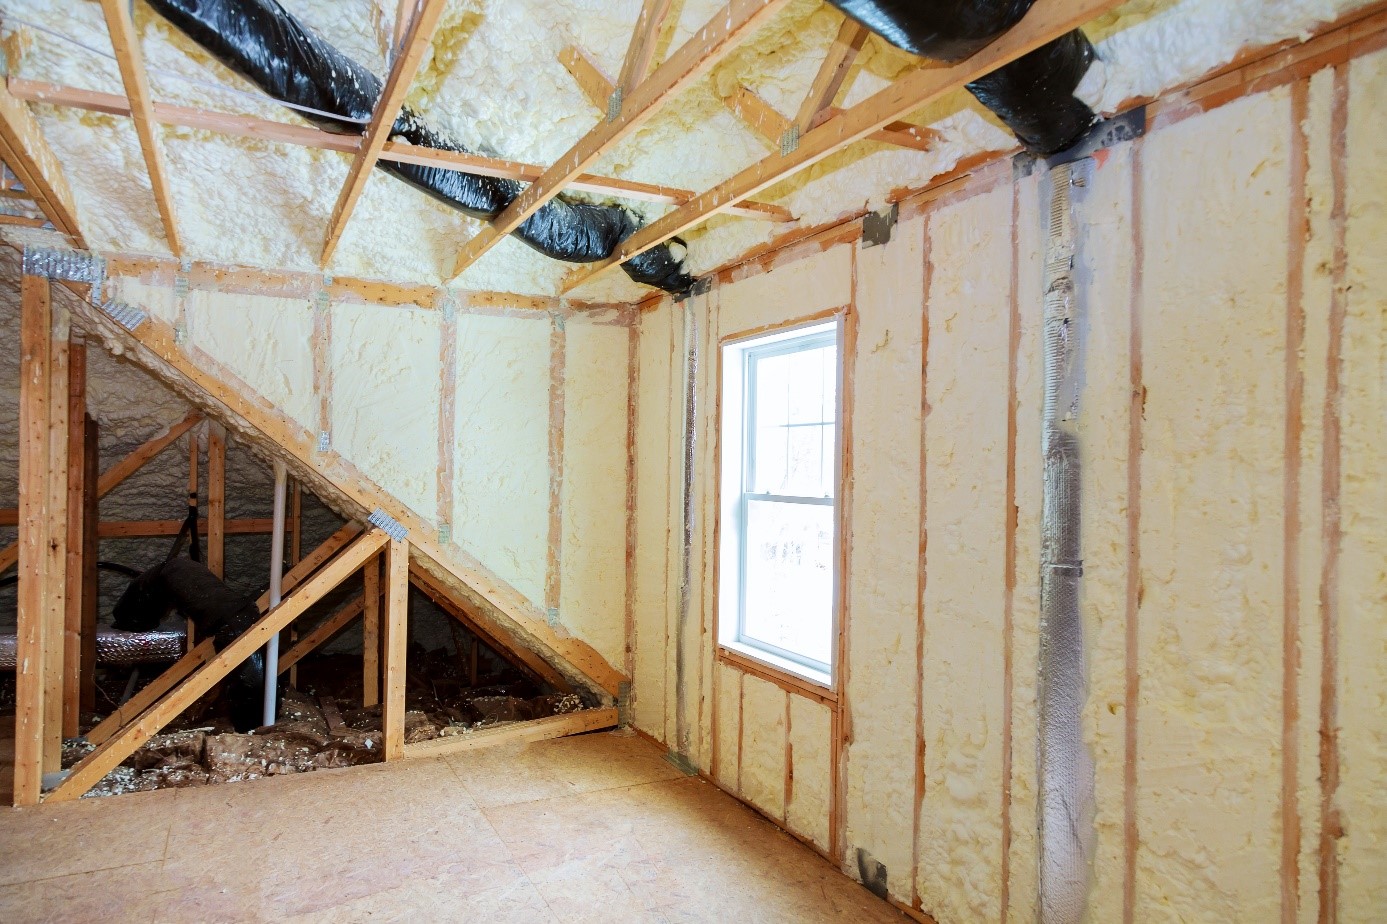 drewniana, wewnętrzna konstrukcja dachu - poddasze zaizolowane nowoczesną pianką poliuretanową (PUR)